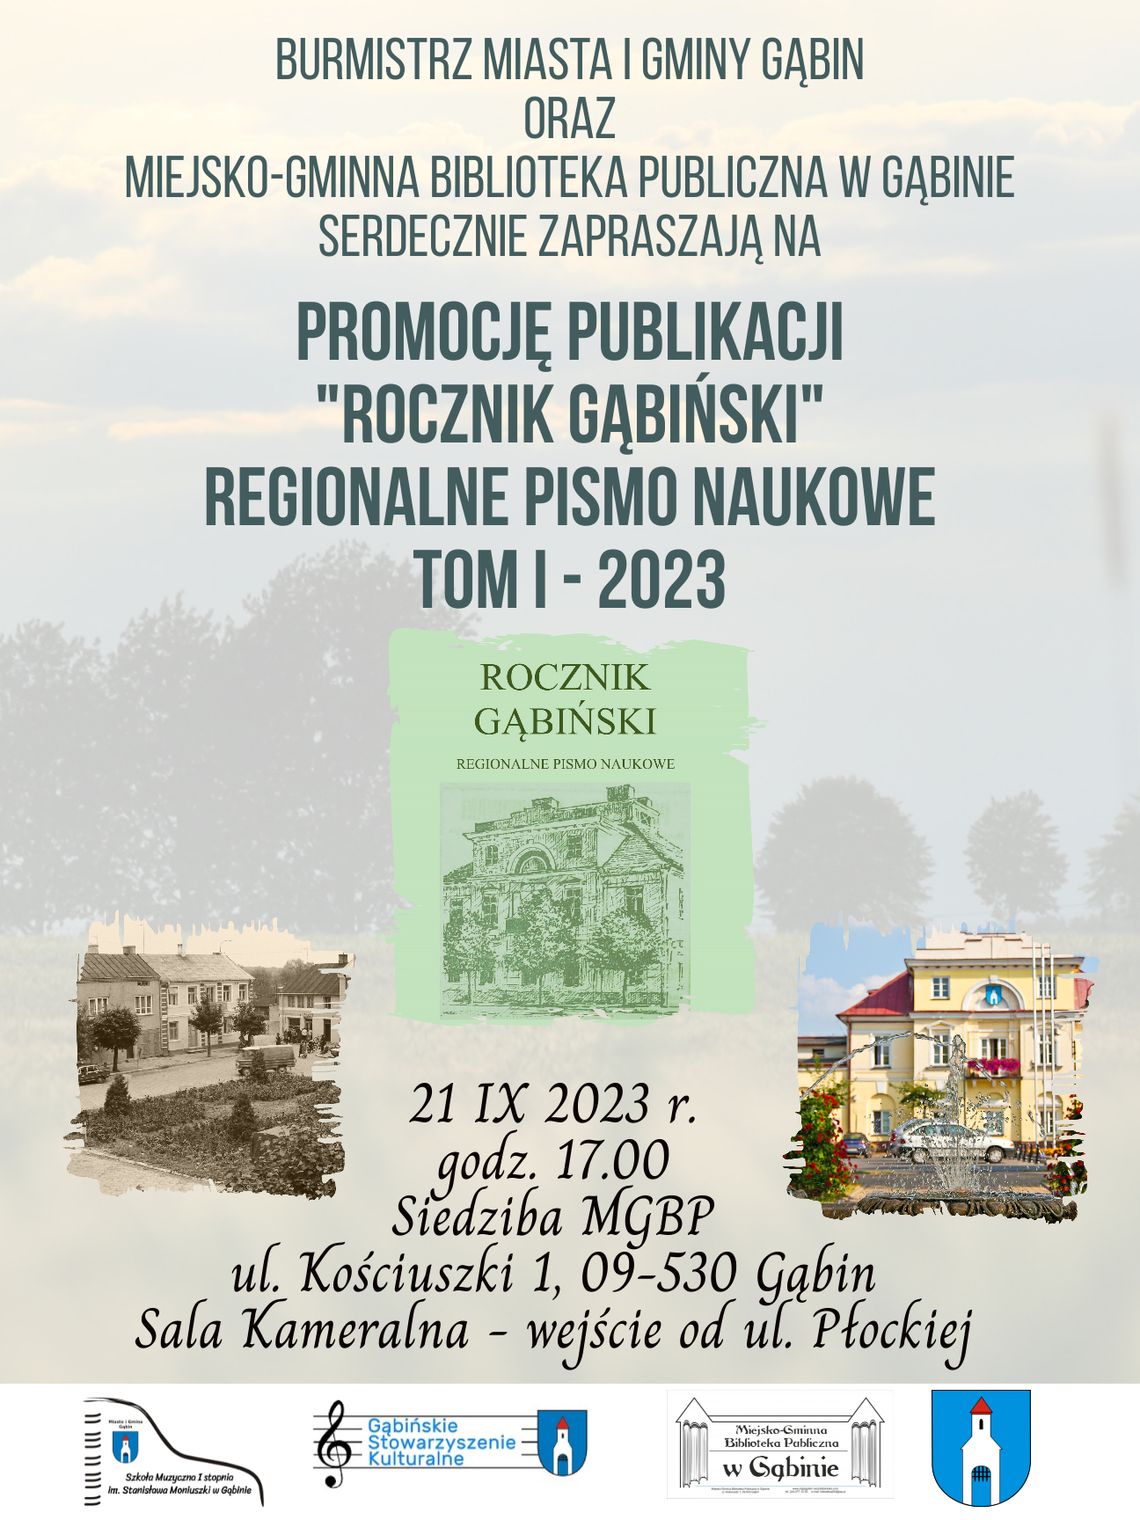 Promocja publikacji "Rocznik Gąbiński"